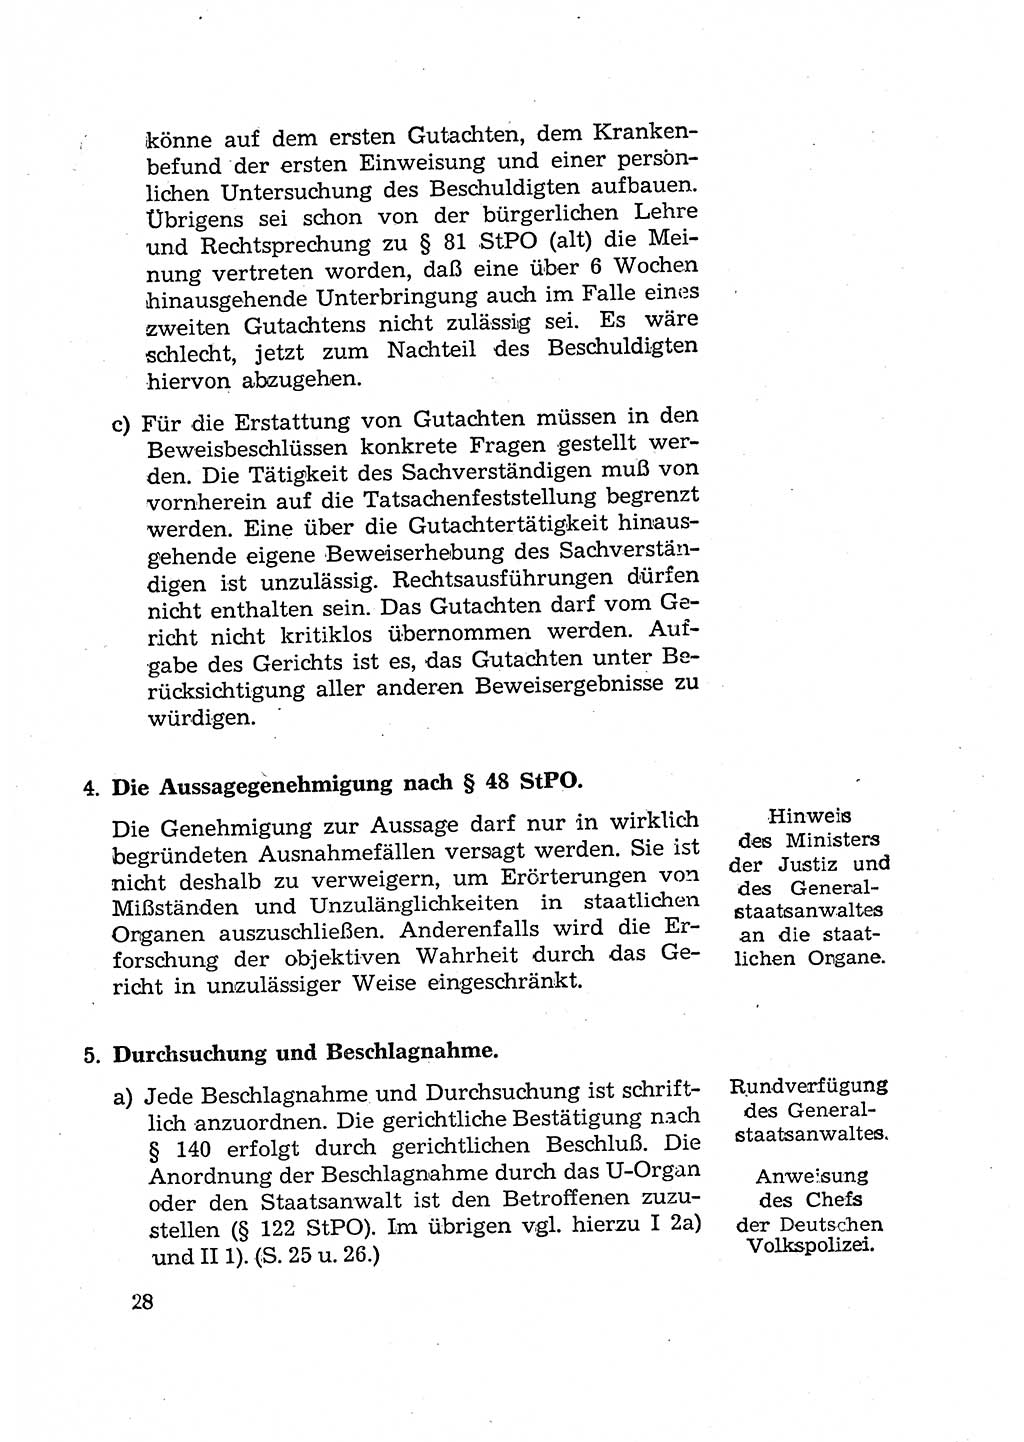 Bericht der Kommission zur Überprüfung der Anwendung der StPO (Strafprozeßordnung) [Deutsche Demokratische Republik (DDR)] 1956, Seite 28 (Ber. StPO DDR 1956, S. 28)